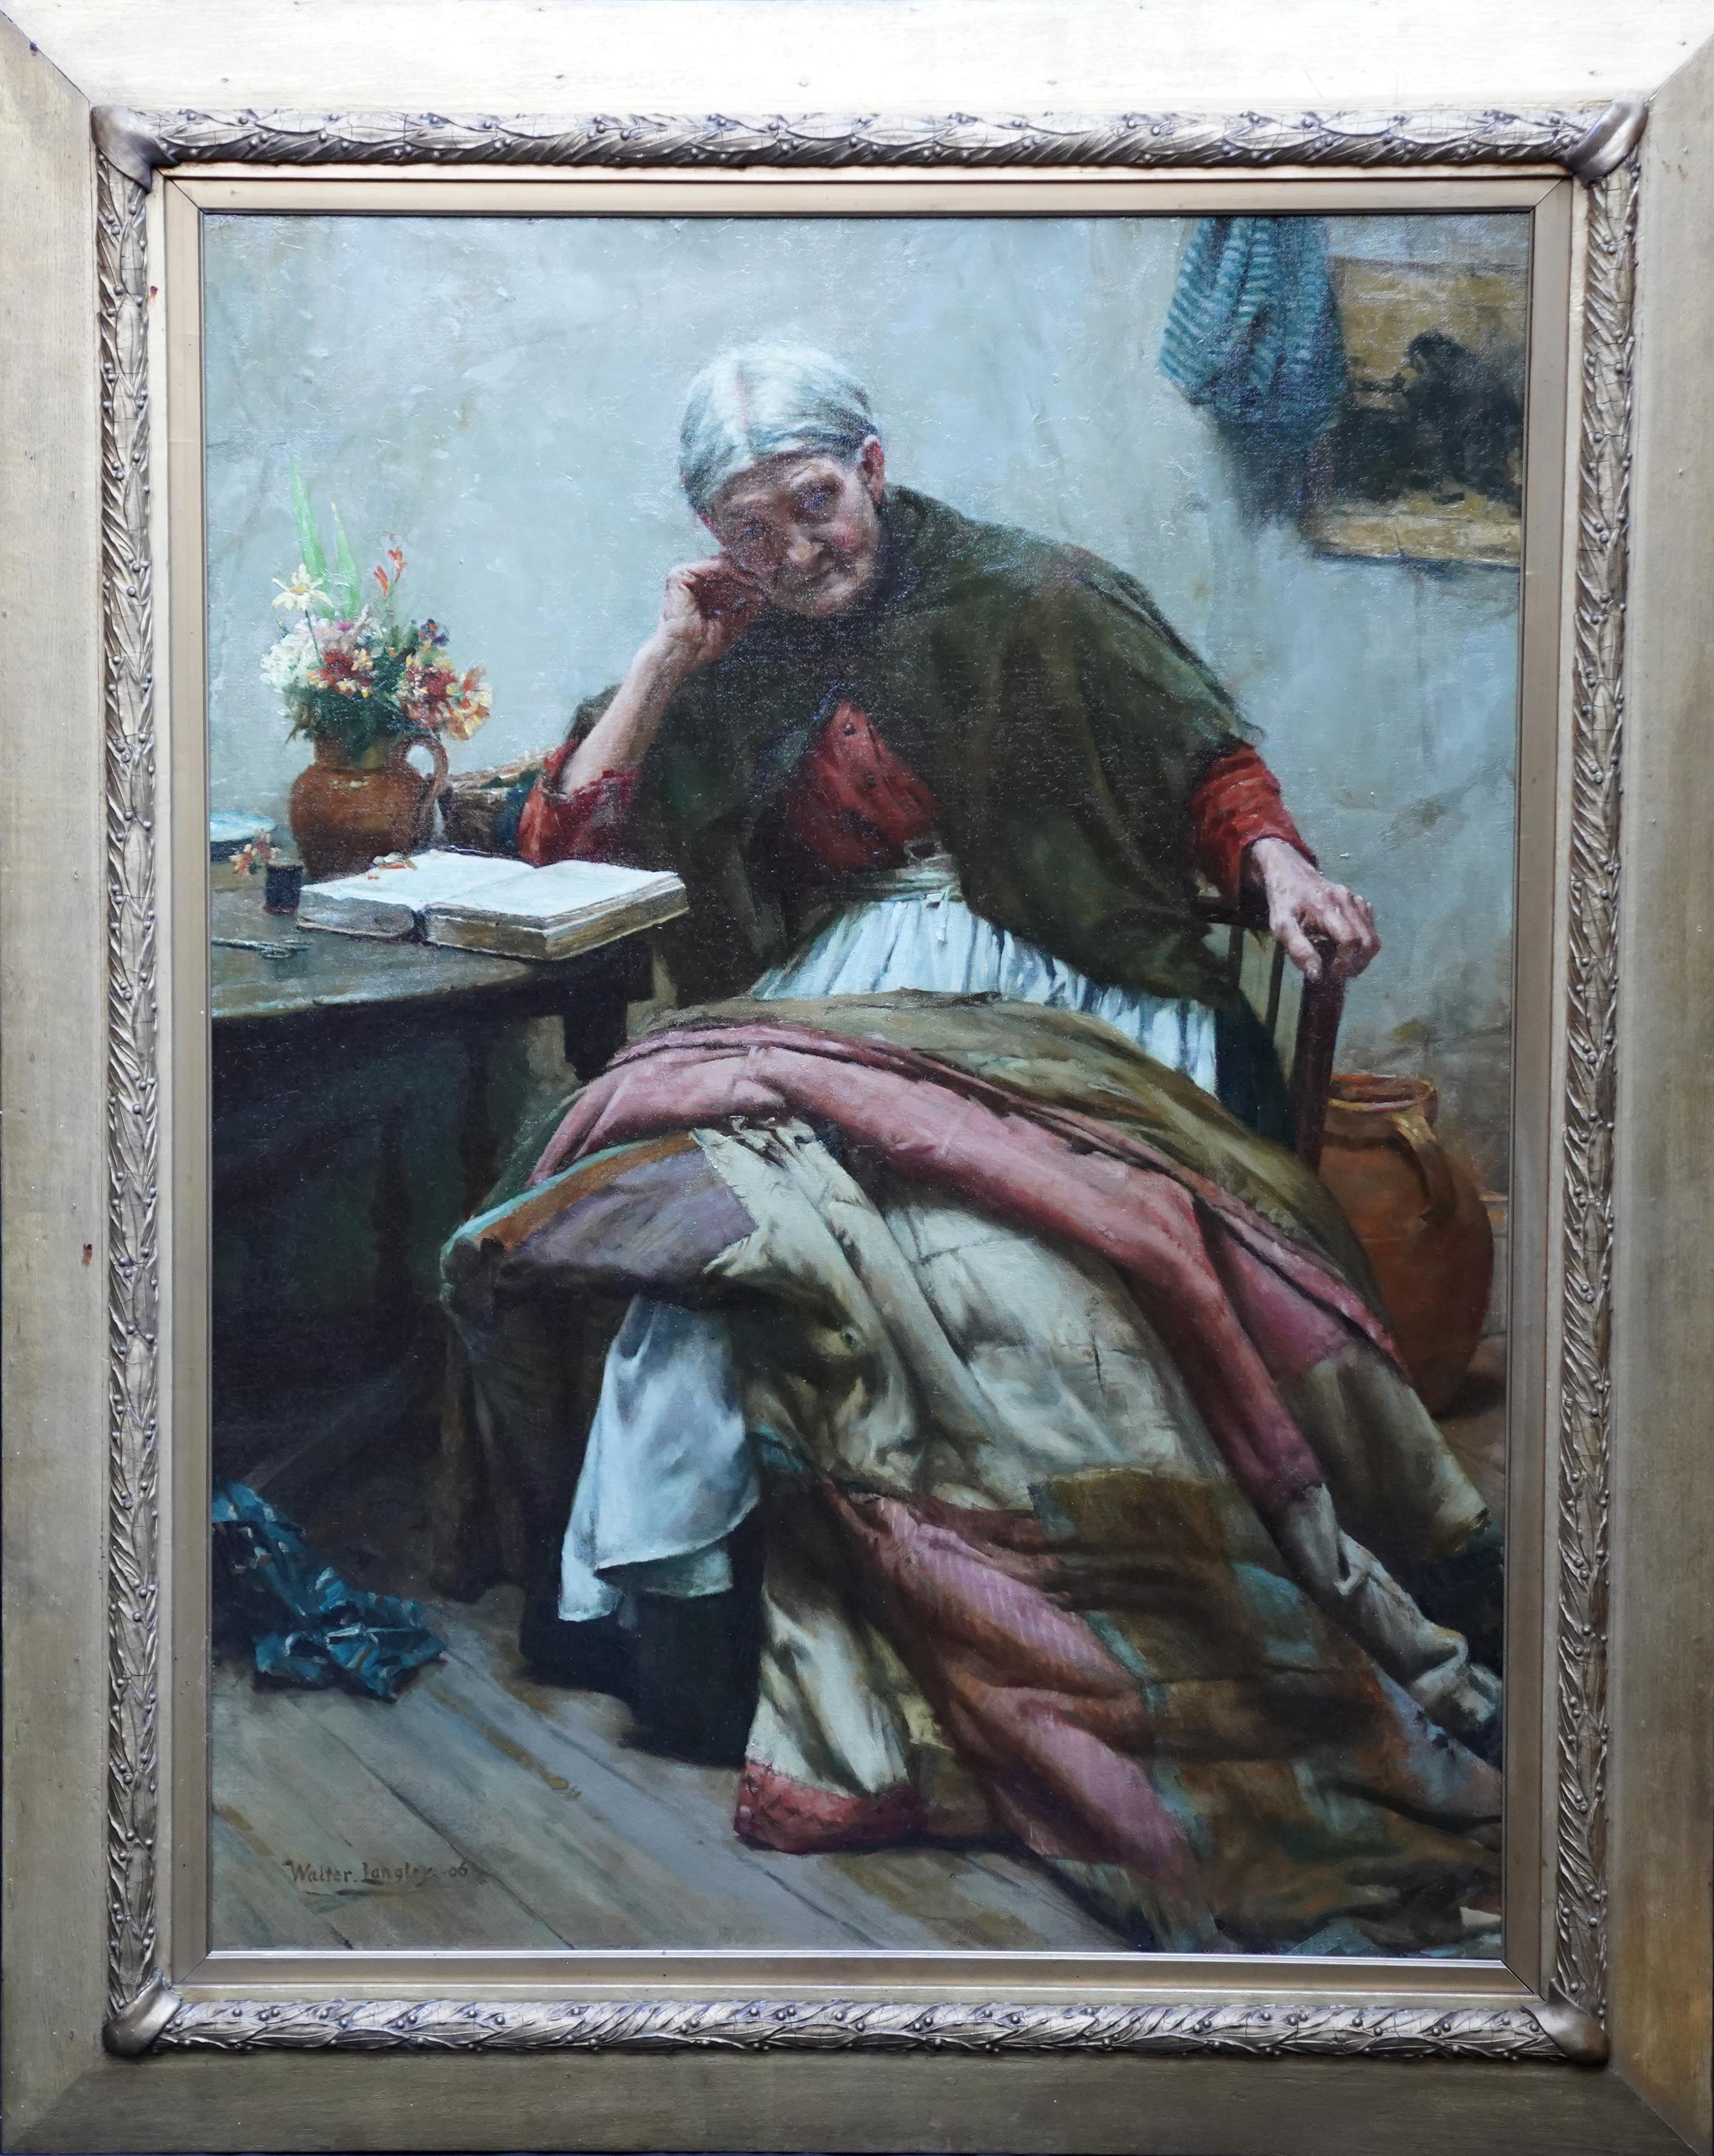 The Evening of Life - Portrait d'intérieur - Peinture à l'huile britannique de Newlyn Sch, 1906 